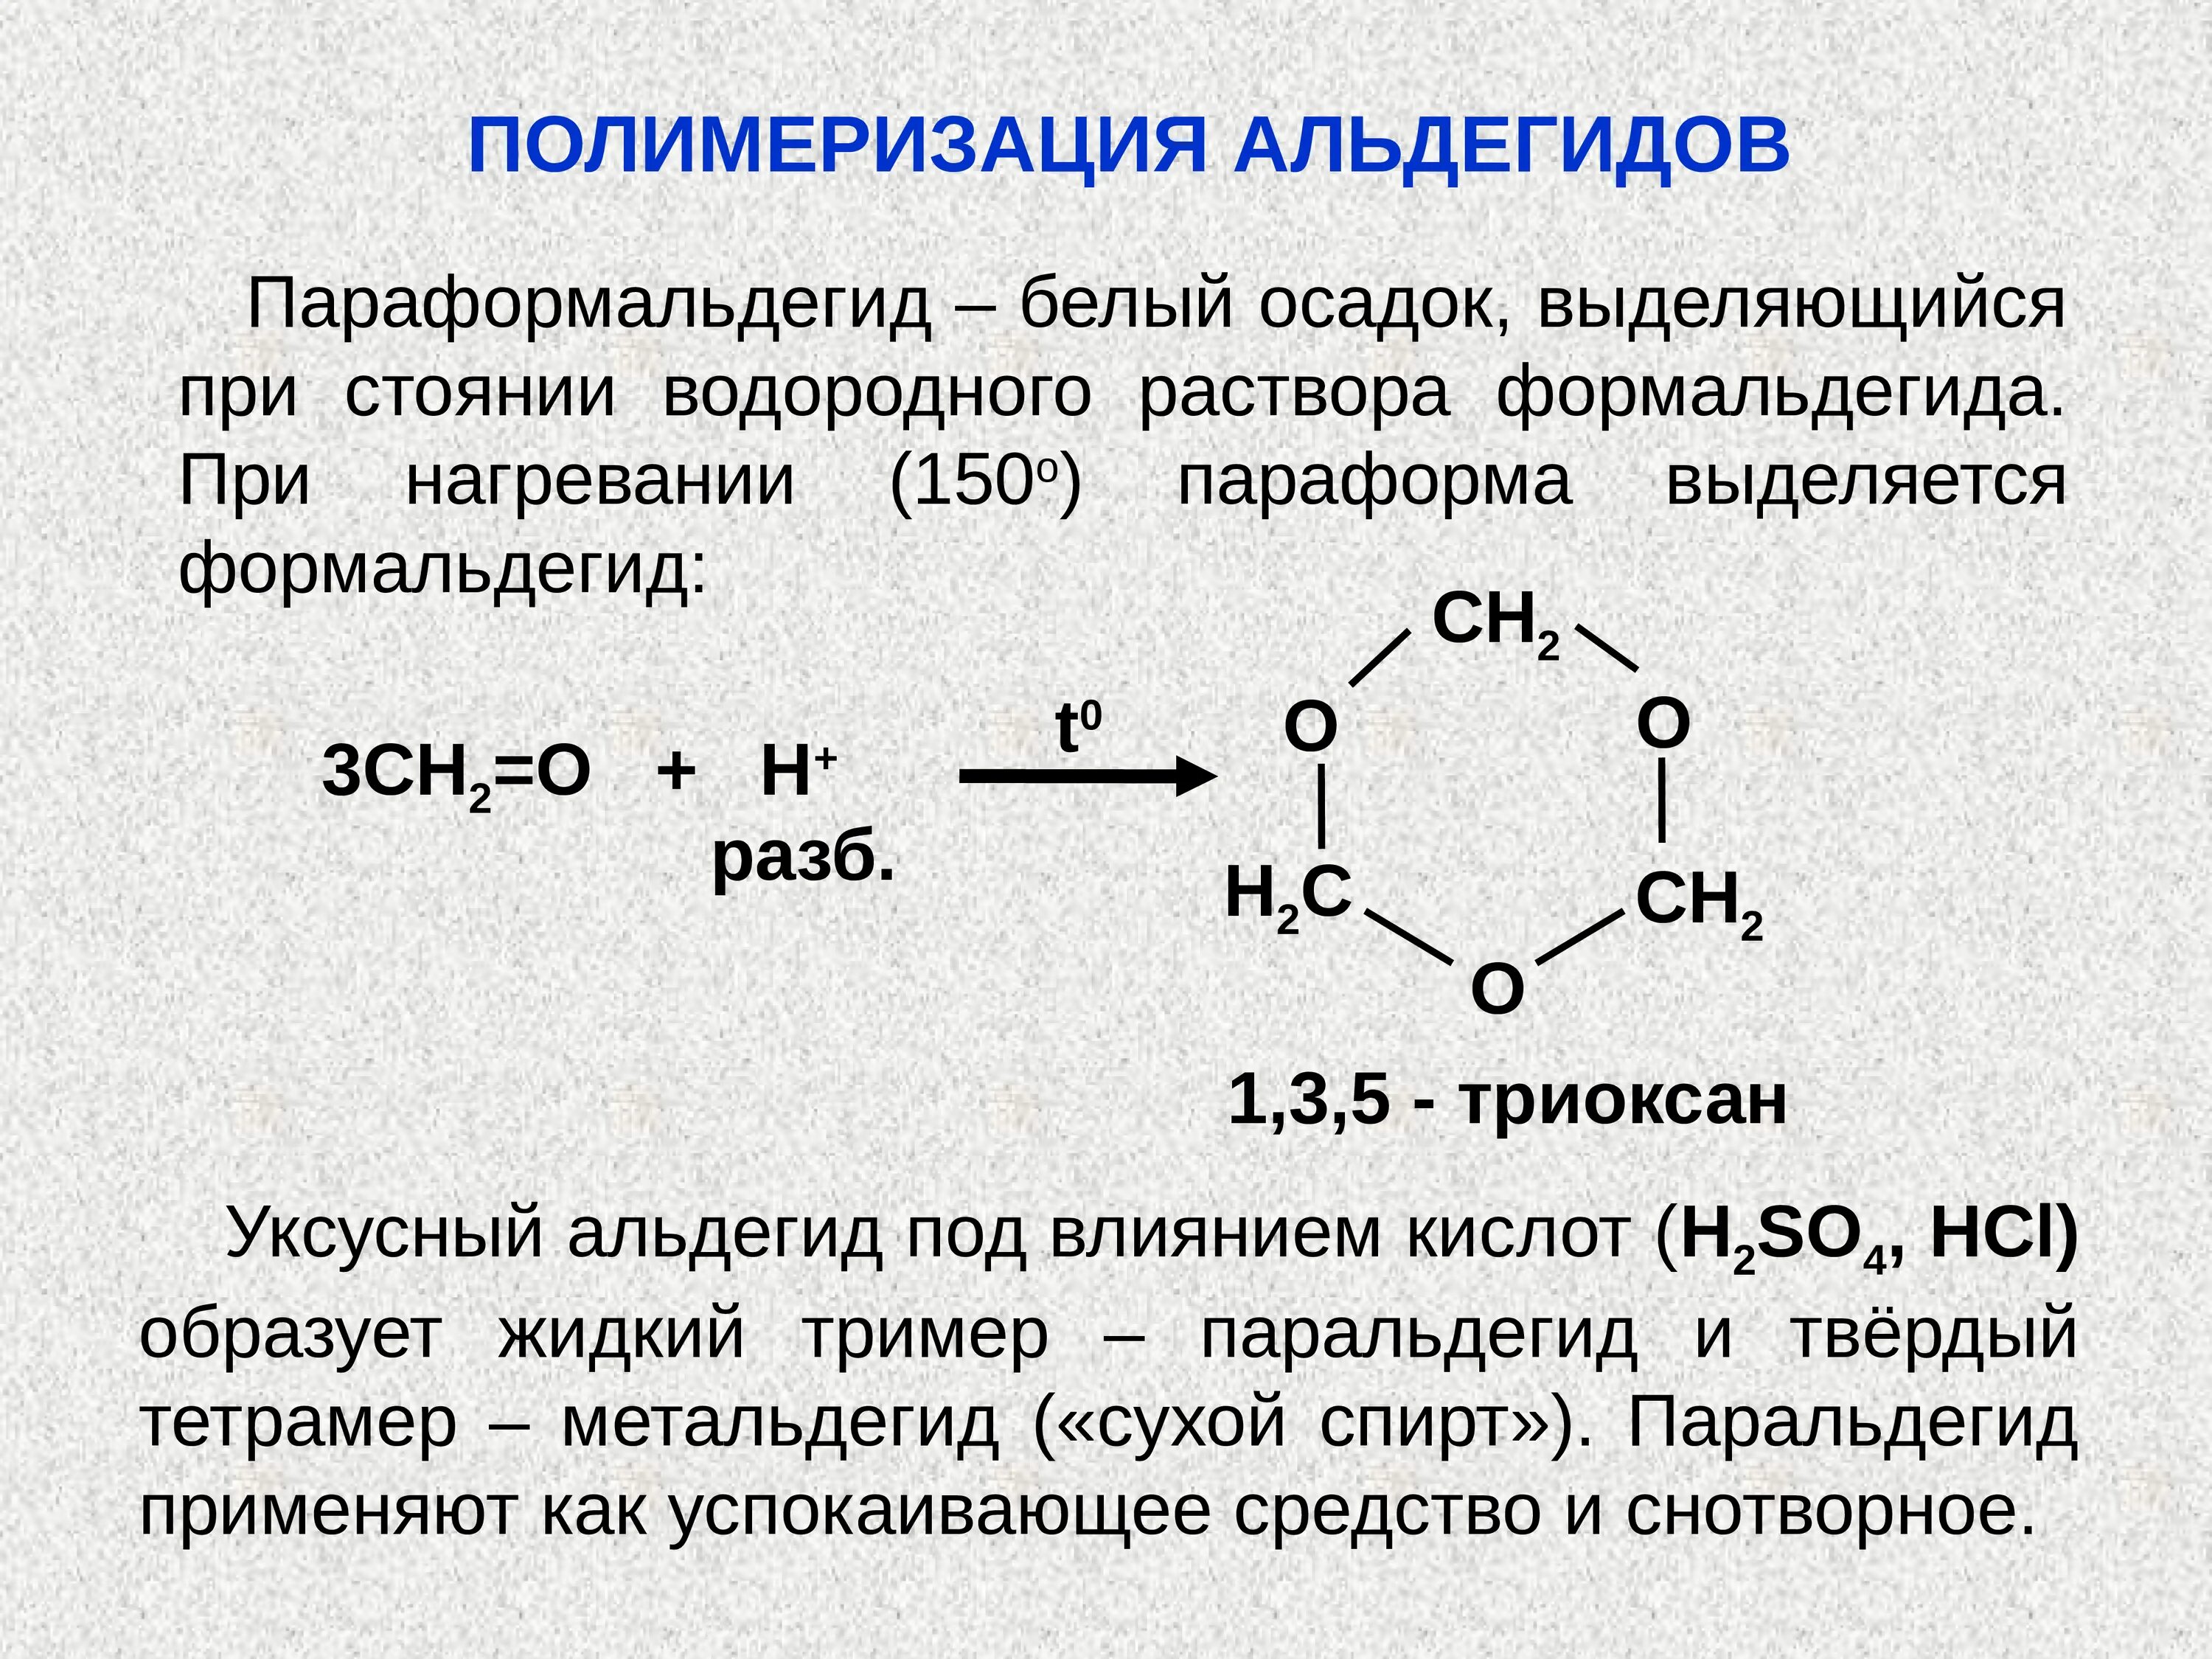 Реакция полимеризации формальдегида. Реакция полимеризации альдегидов. Полимеризация альдегидов параформ. Полимеризация альдегидов параформ паральдегид.